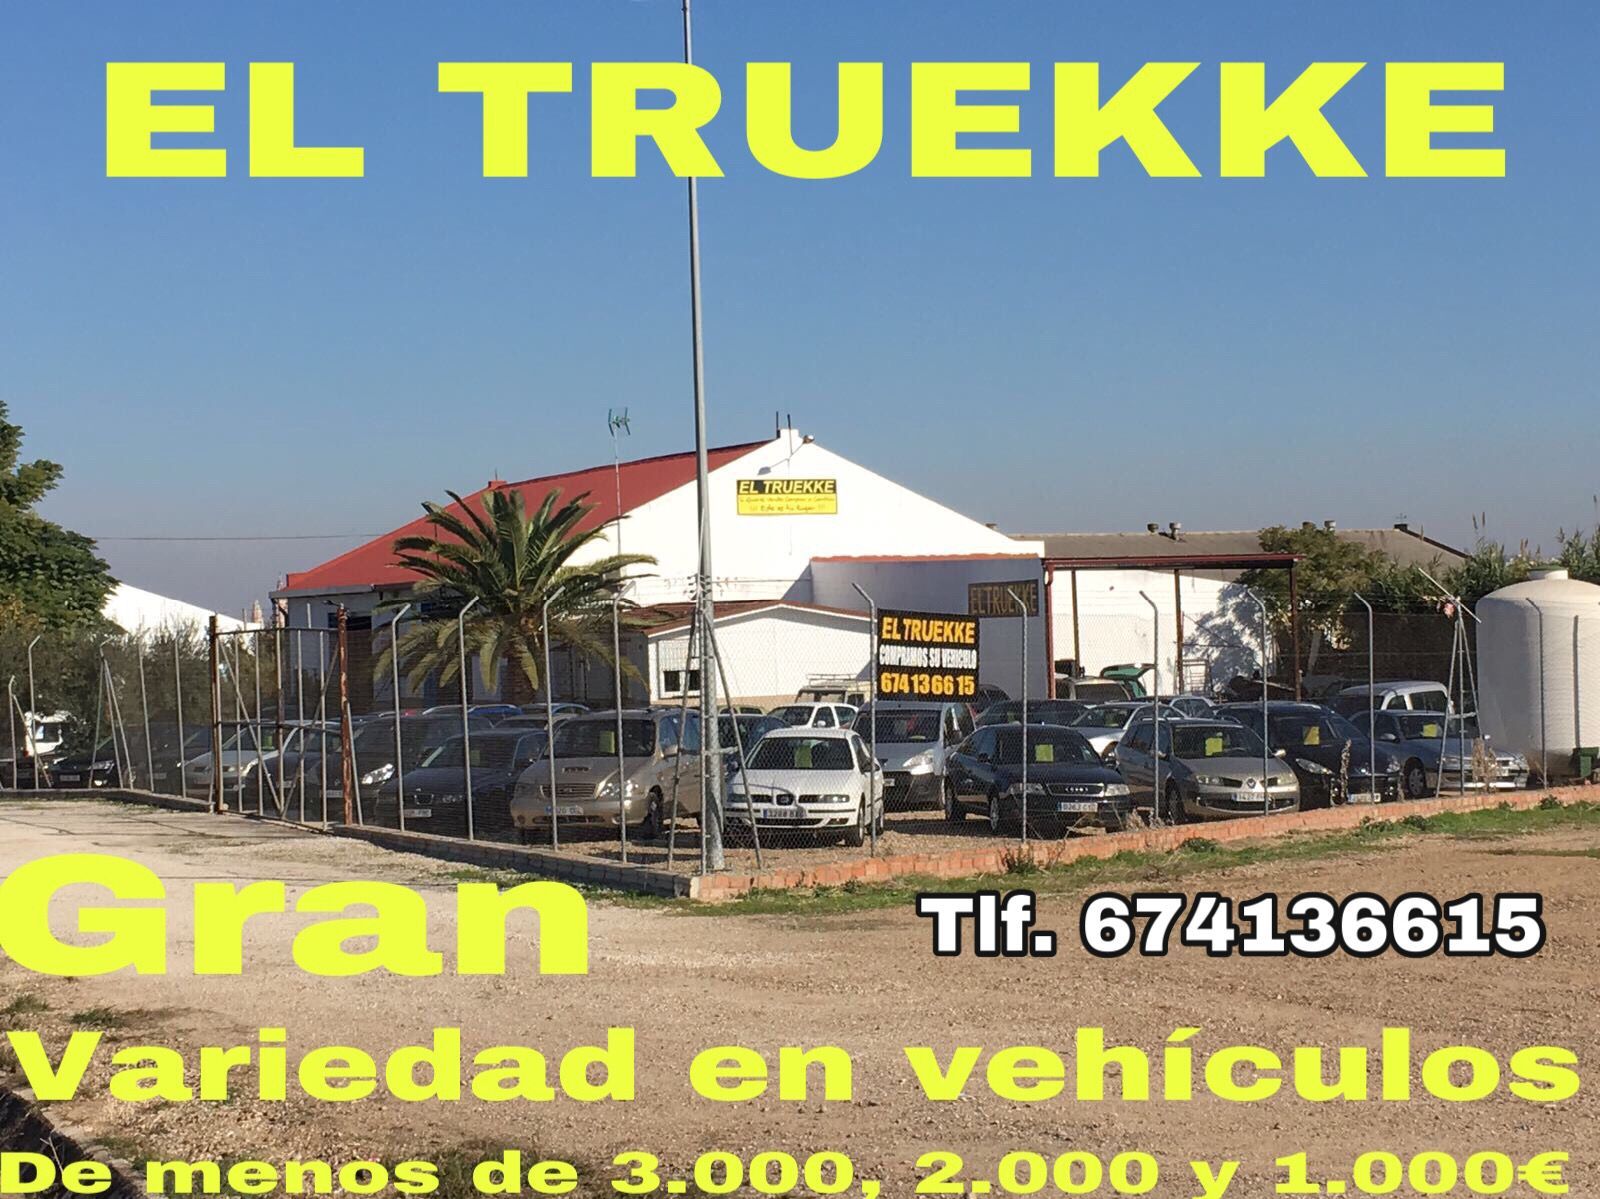 Compra y venta de vehículos en Sevilla